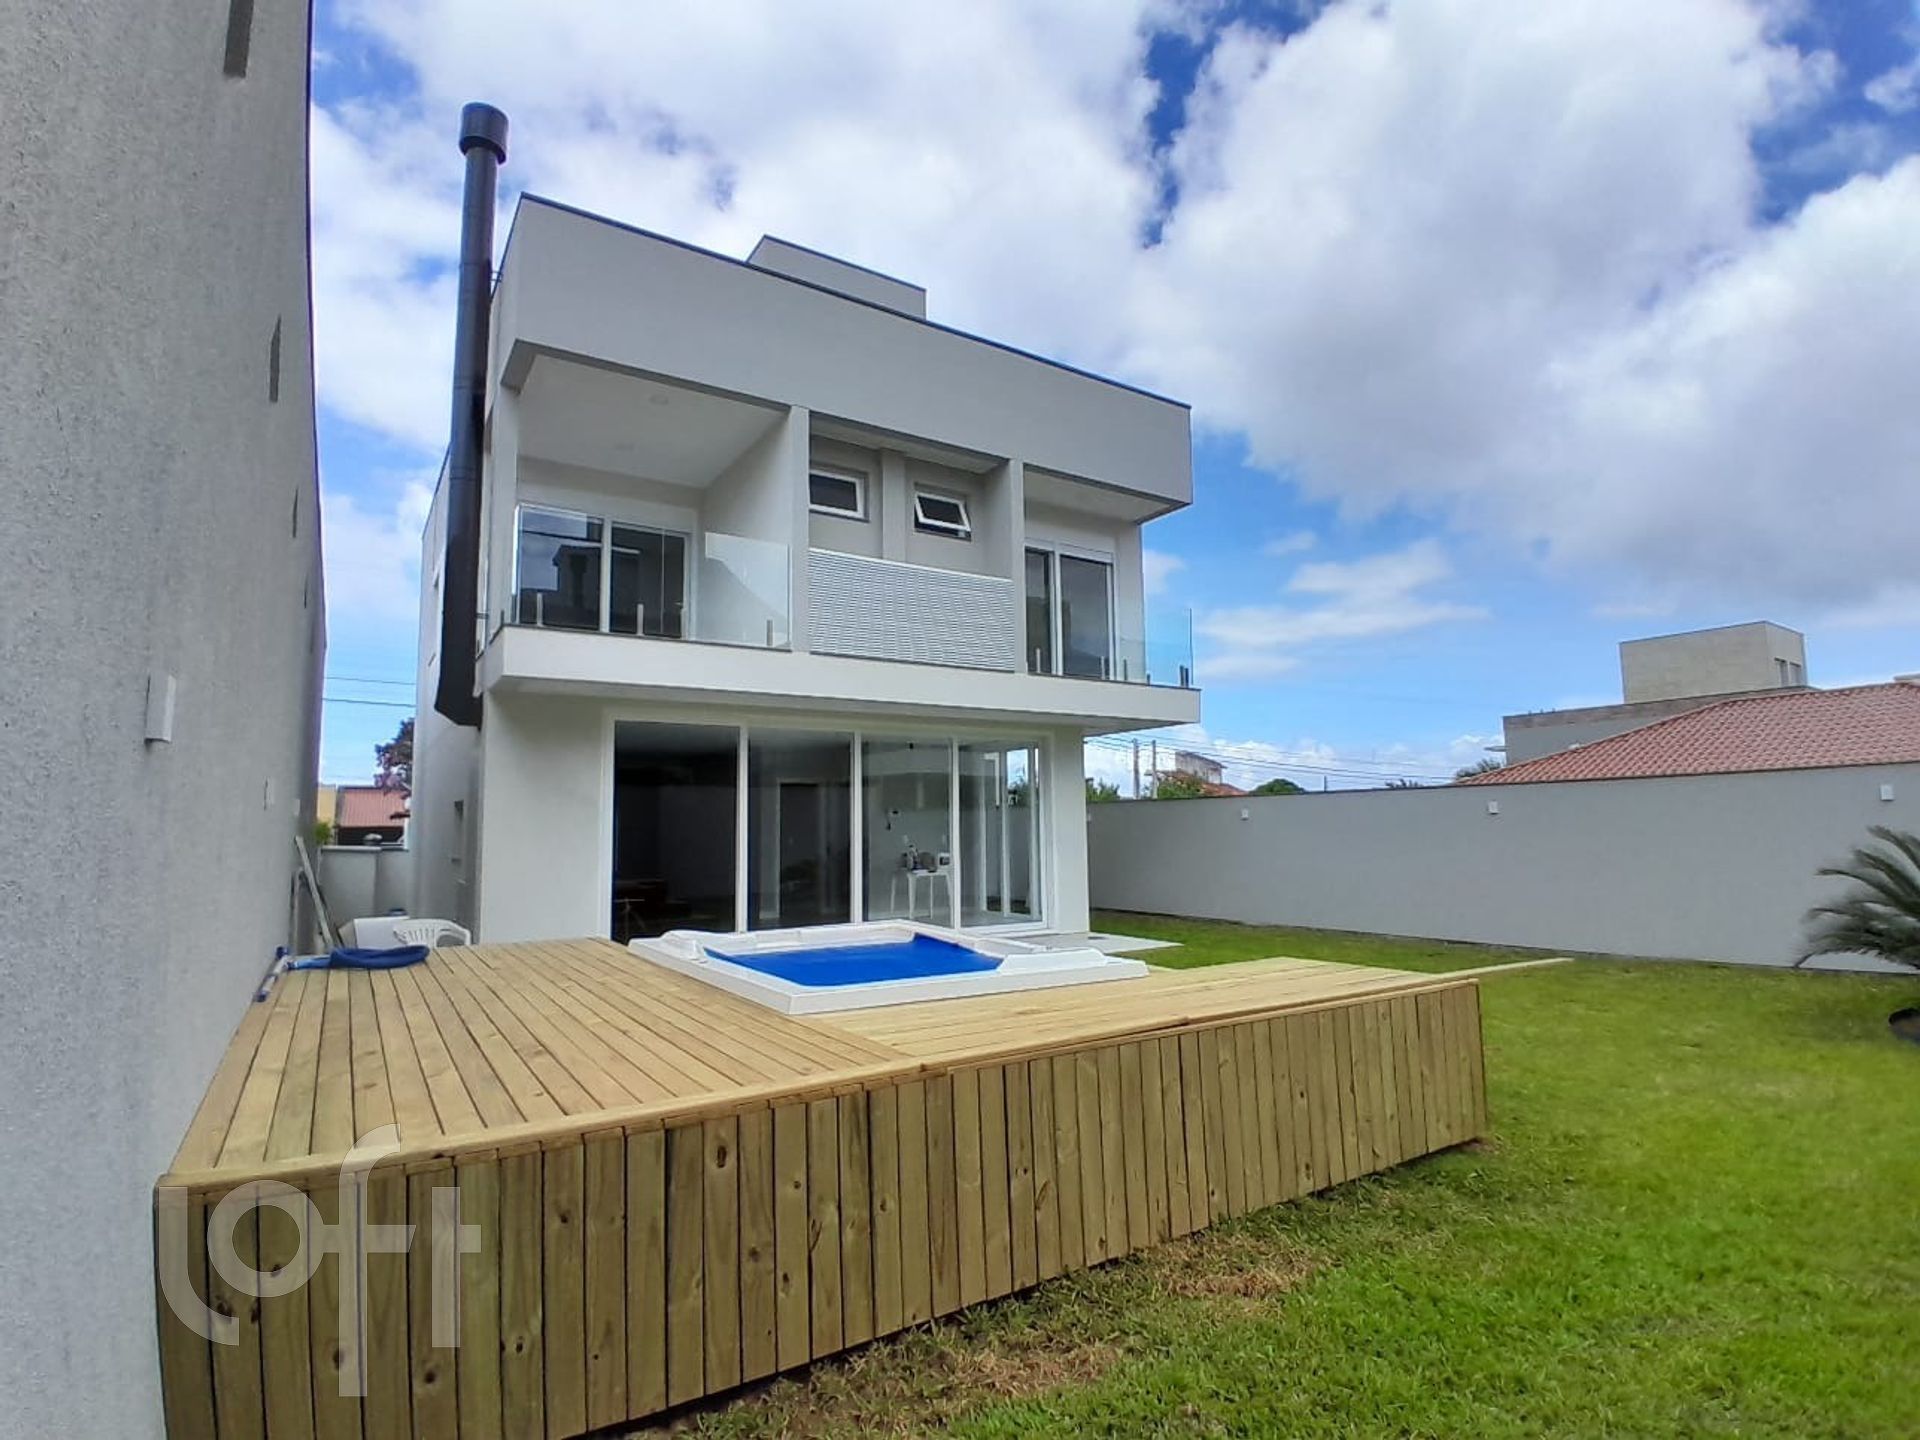 VENDA &#8211; Casa de 3 quartos no bairro Campeche Central, Florianópolis &#8211; PU151ppik